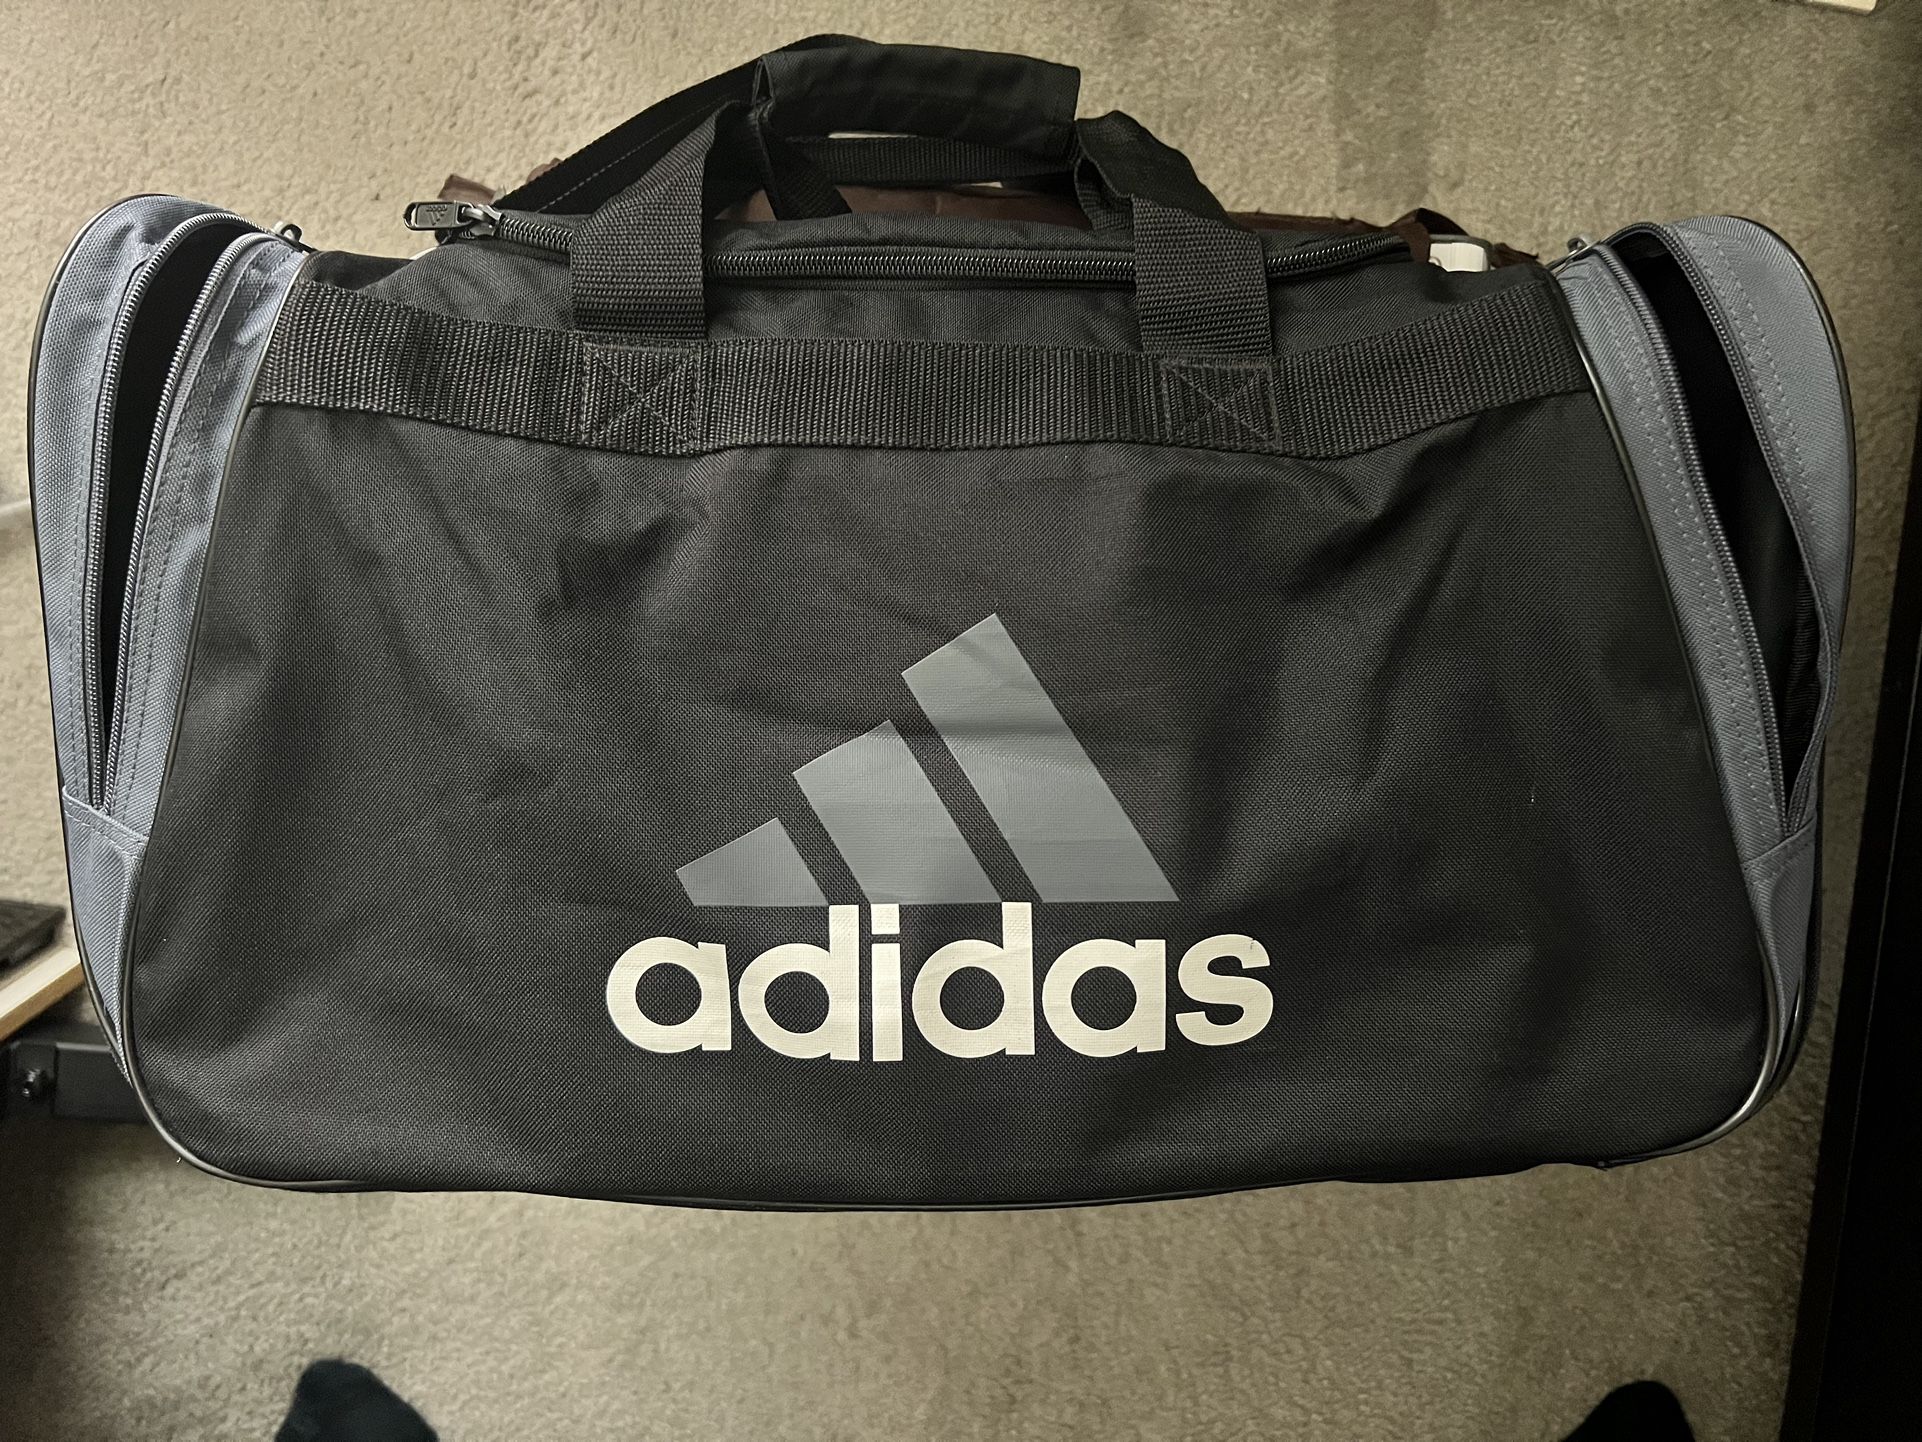 Adidas “Black” Duffle Bag